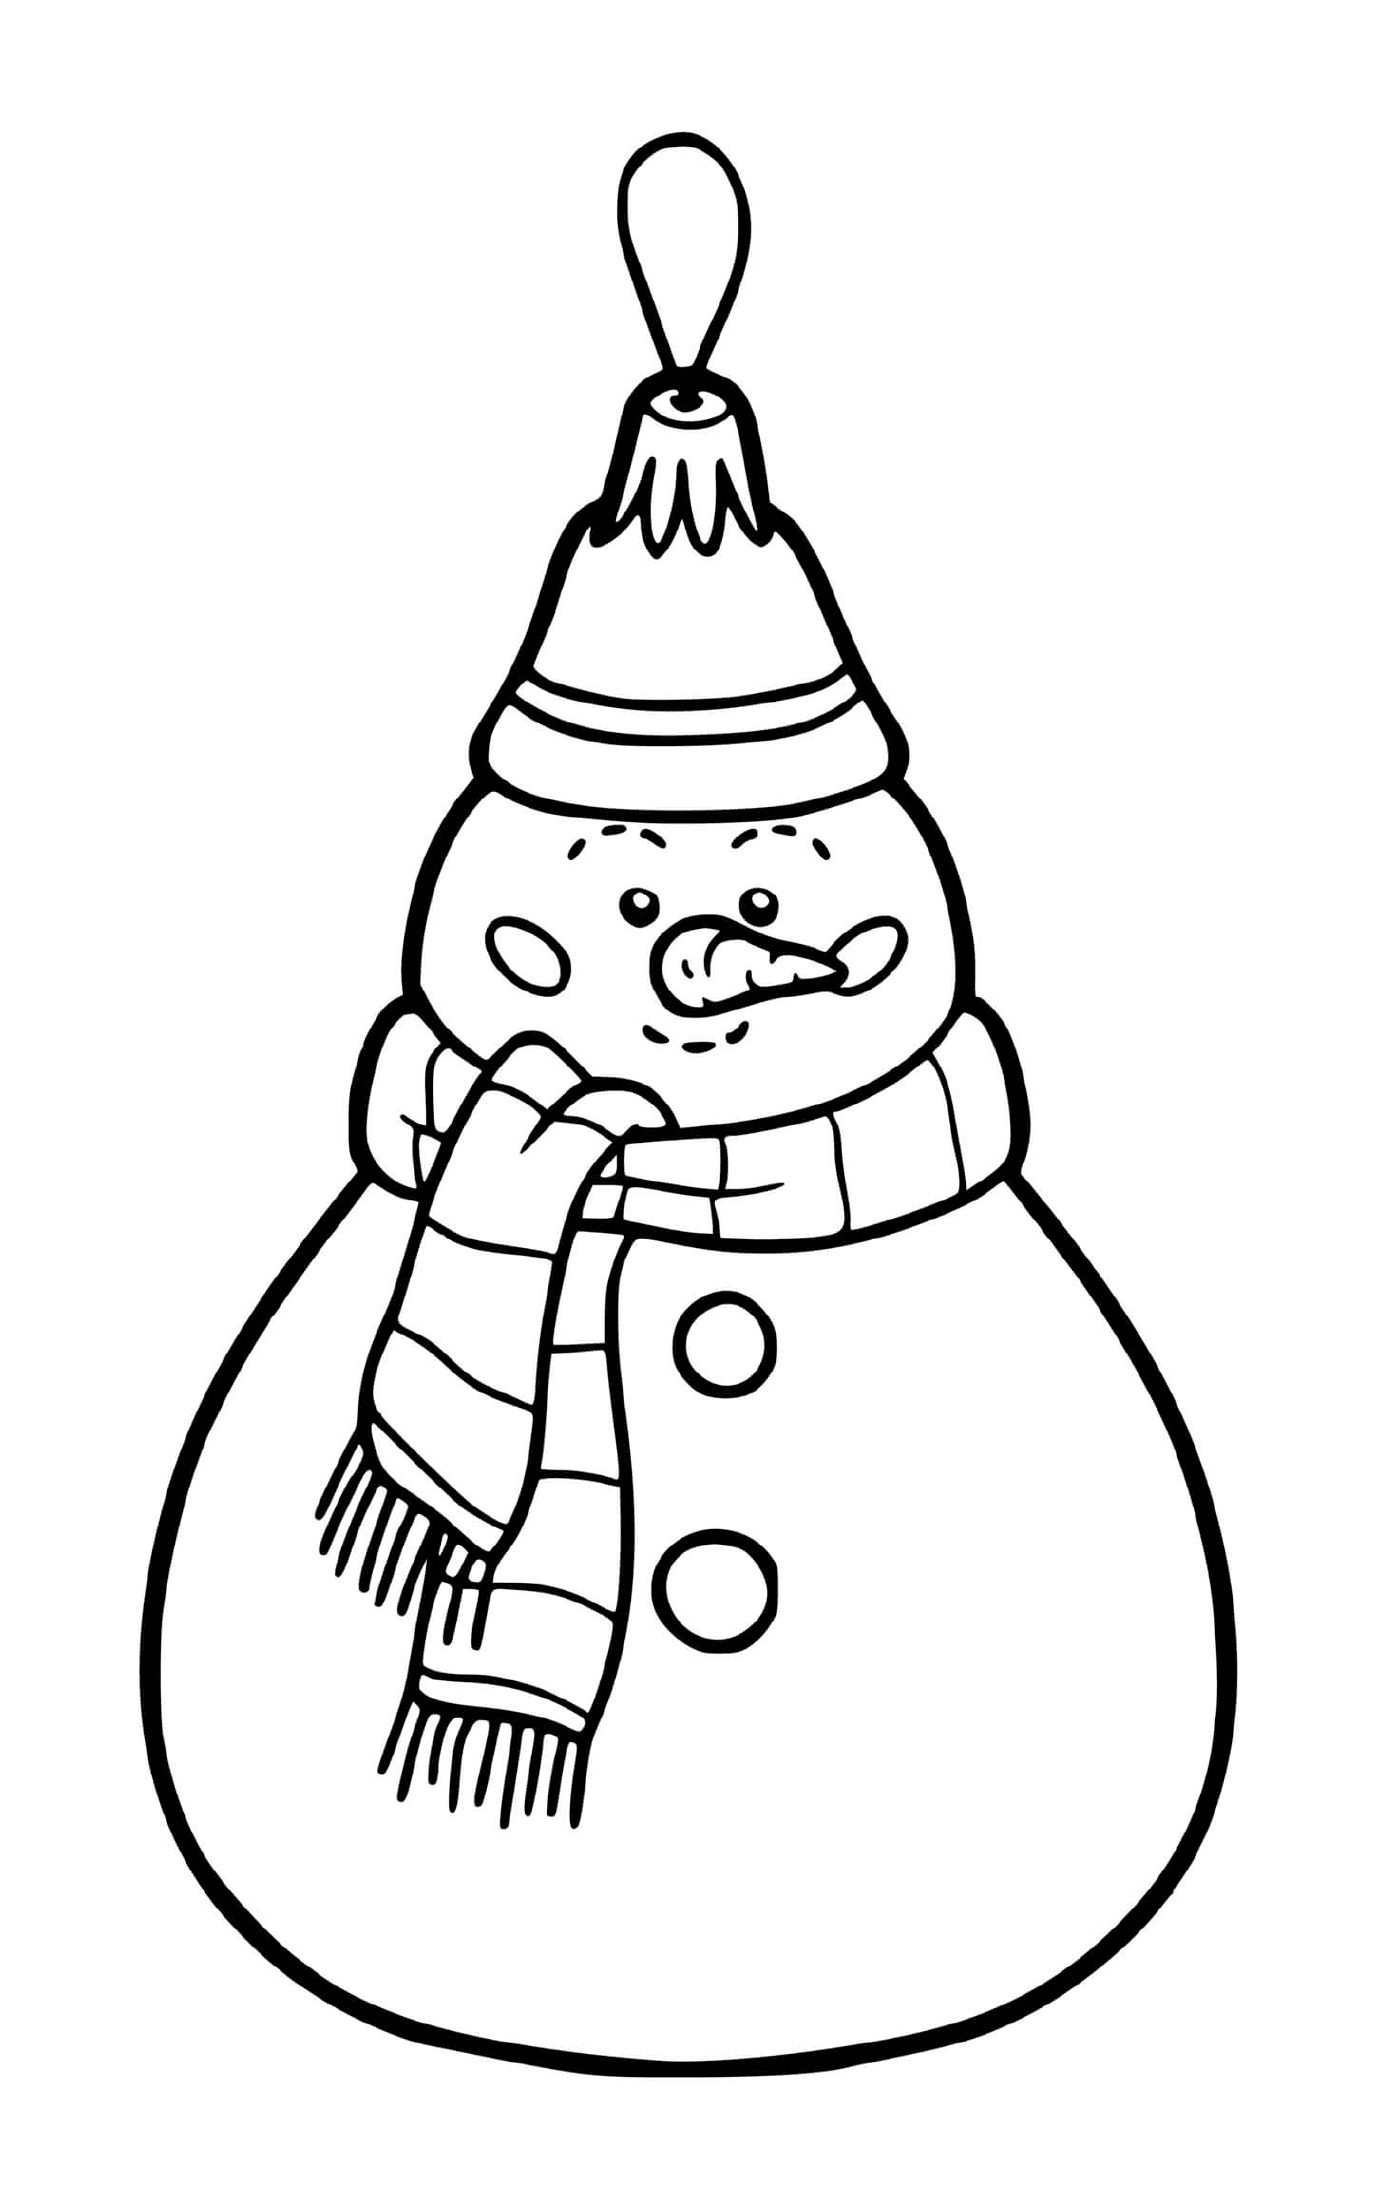  A Christmas ball shaped like a snowman for a tree 